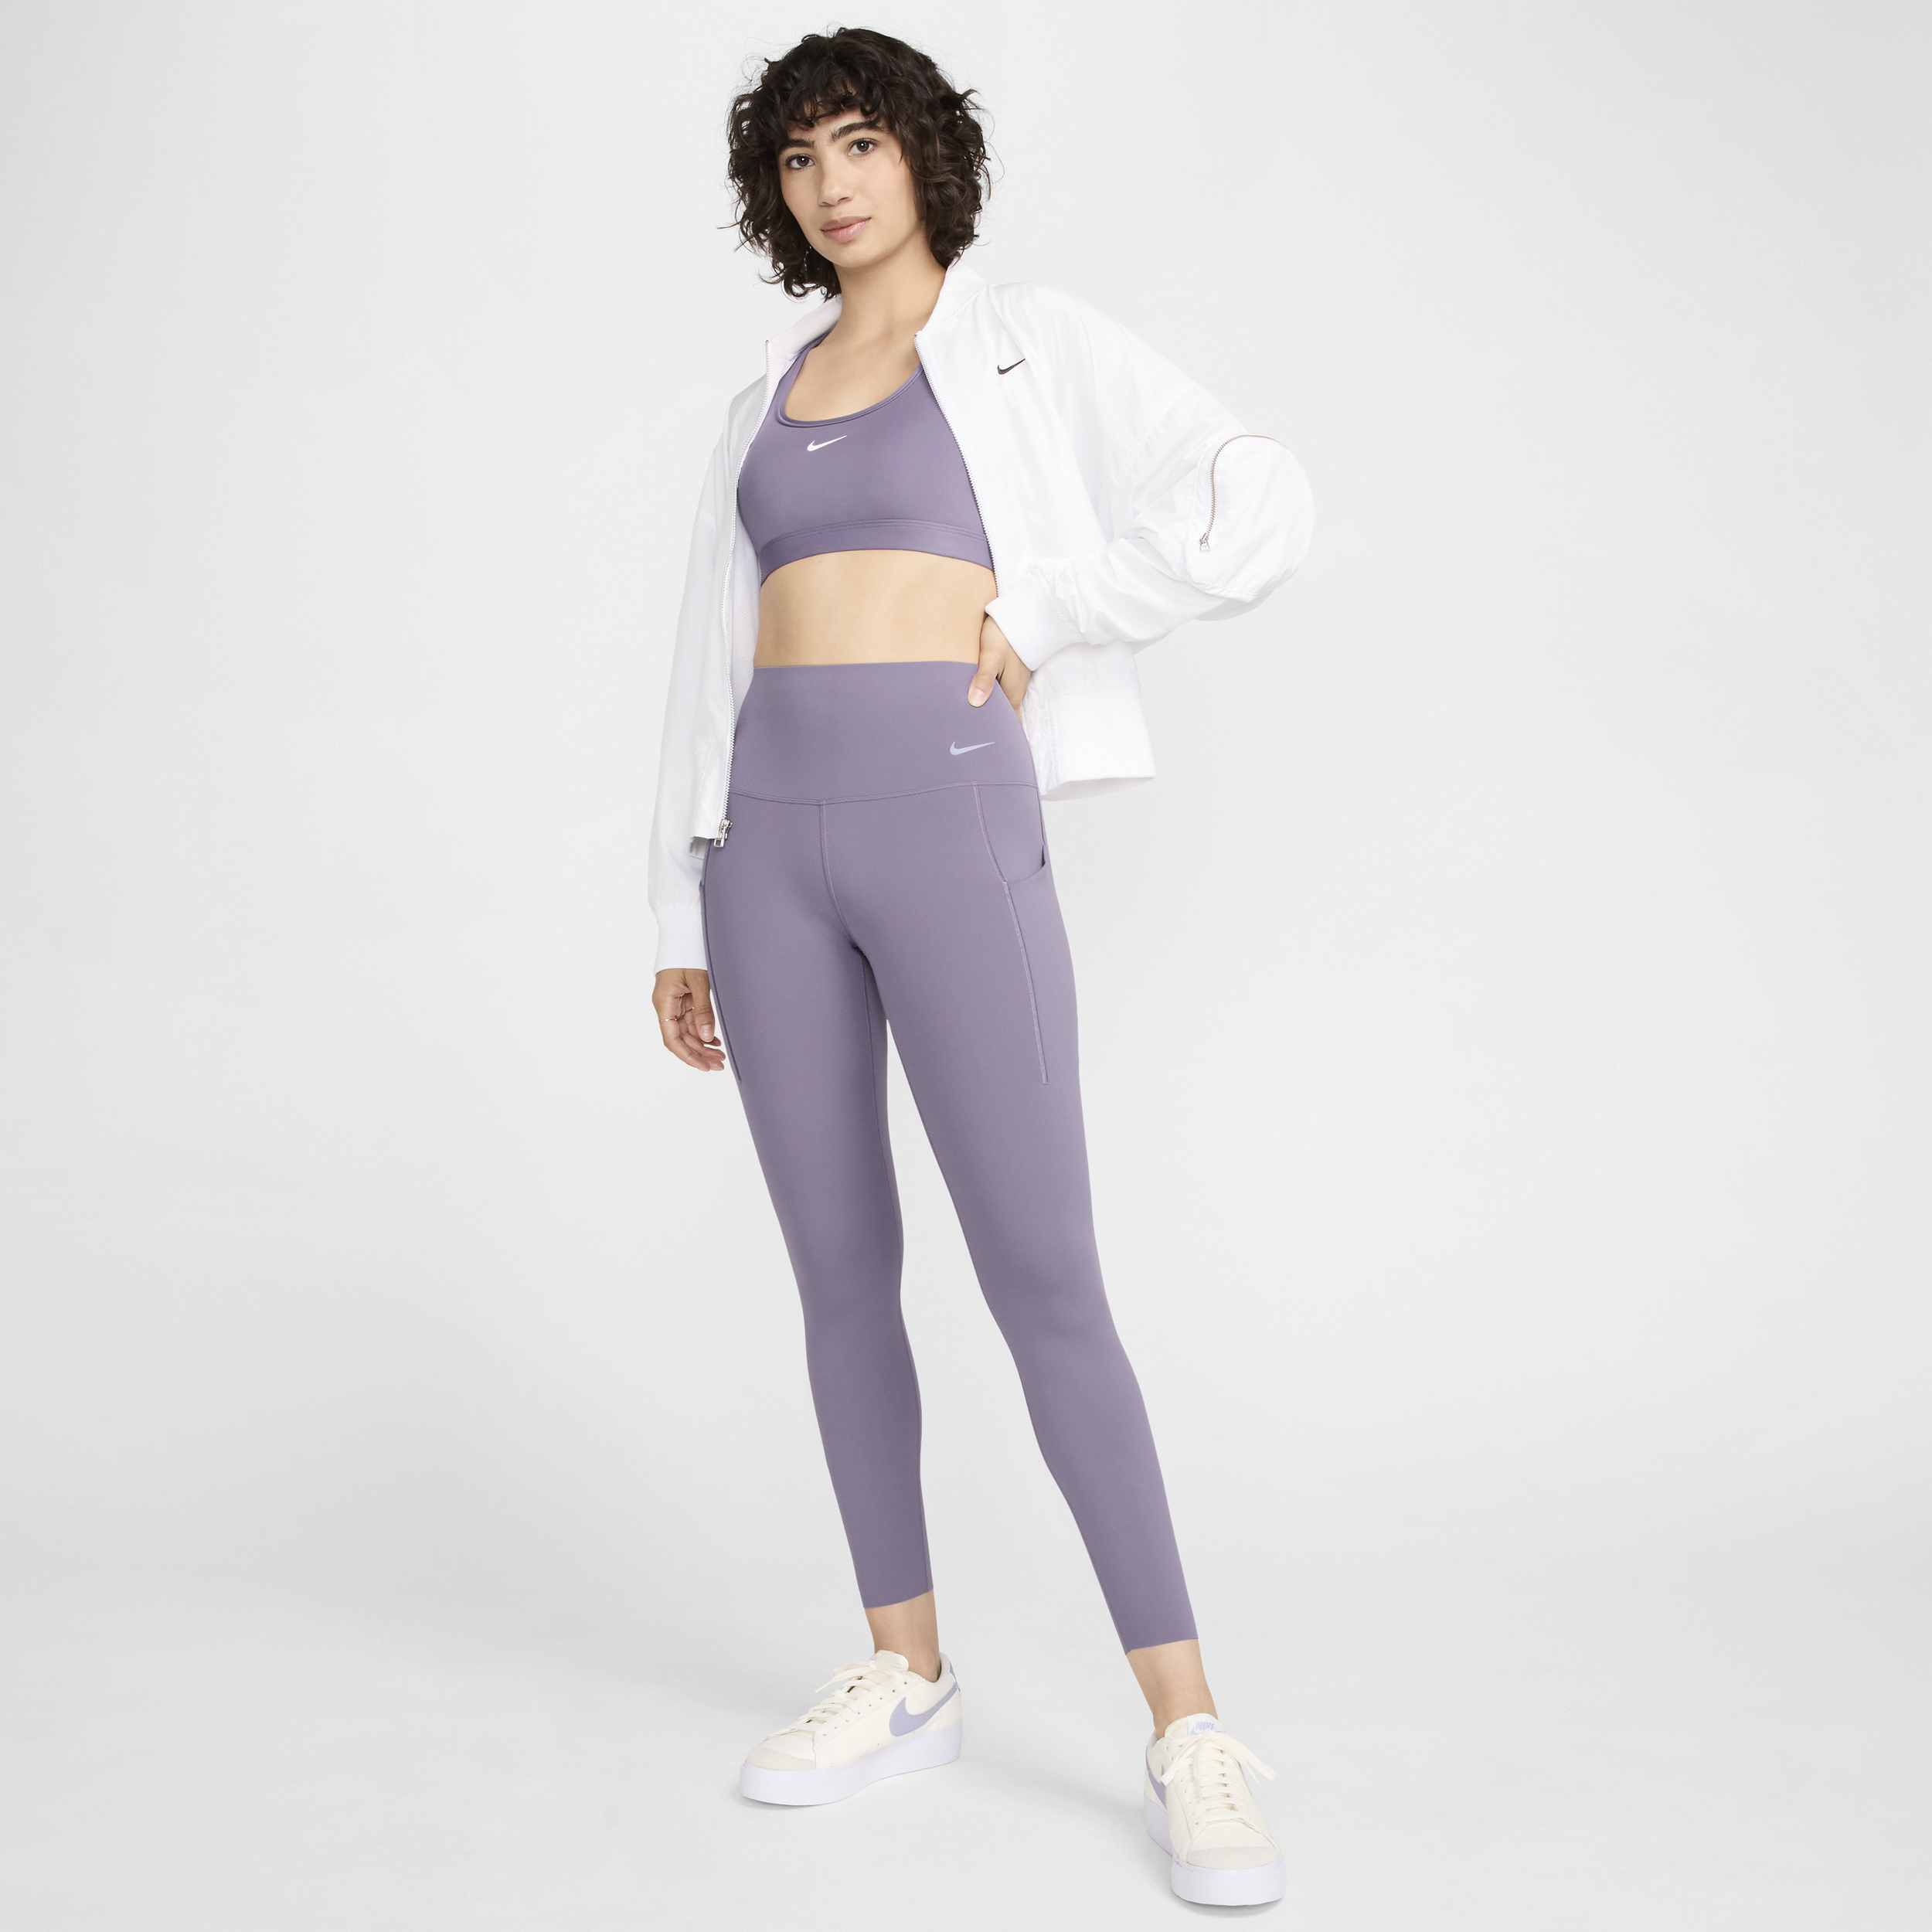 Nike Universa-leggings i 7/8 længde med medium støtte, høj talje og lommer til kvinder - lilla